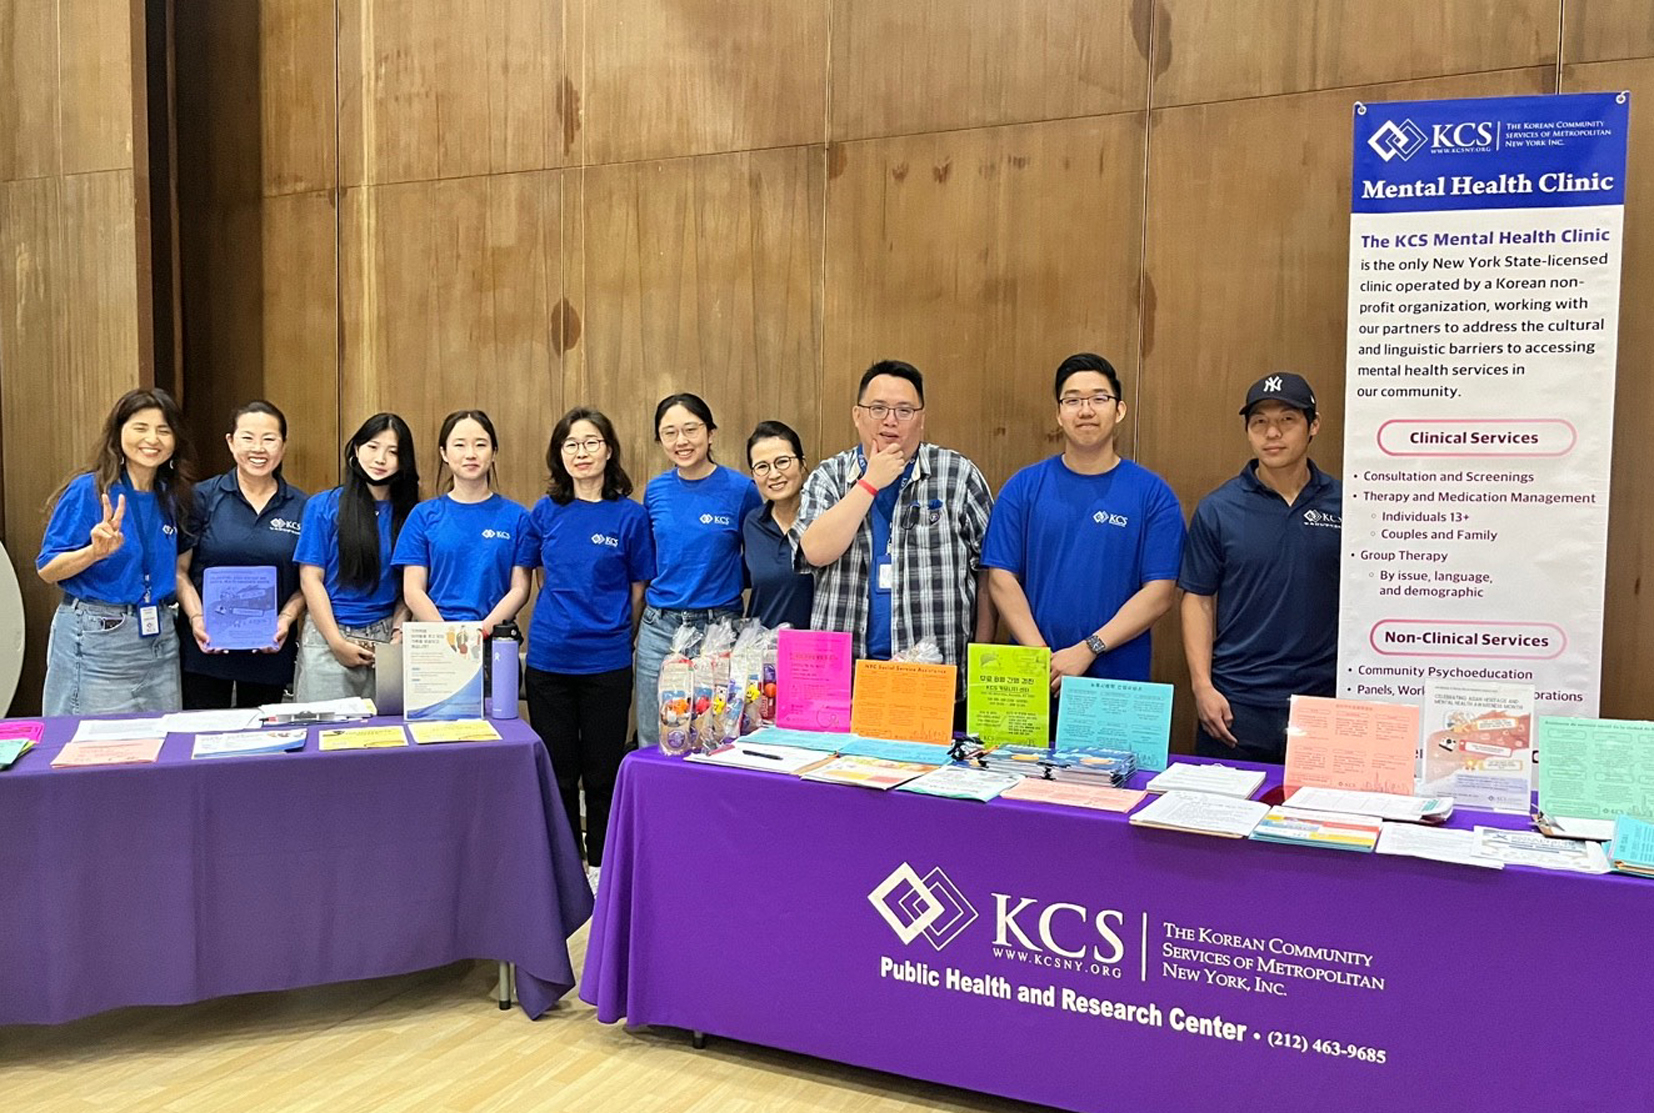 KCS 뉴욕한인봉사센터는 남성 건강의 달인 6월을 맞아 17일 뉴욕시 퀸즈에 있는 KCS 커뮤니티센터에서 남성 건강페어 행사를 성황리에 개최했다. [사진 KCS 뉴욕한인봉사센터]